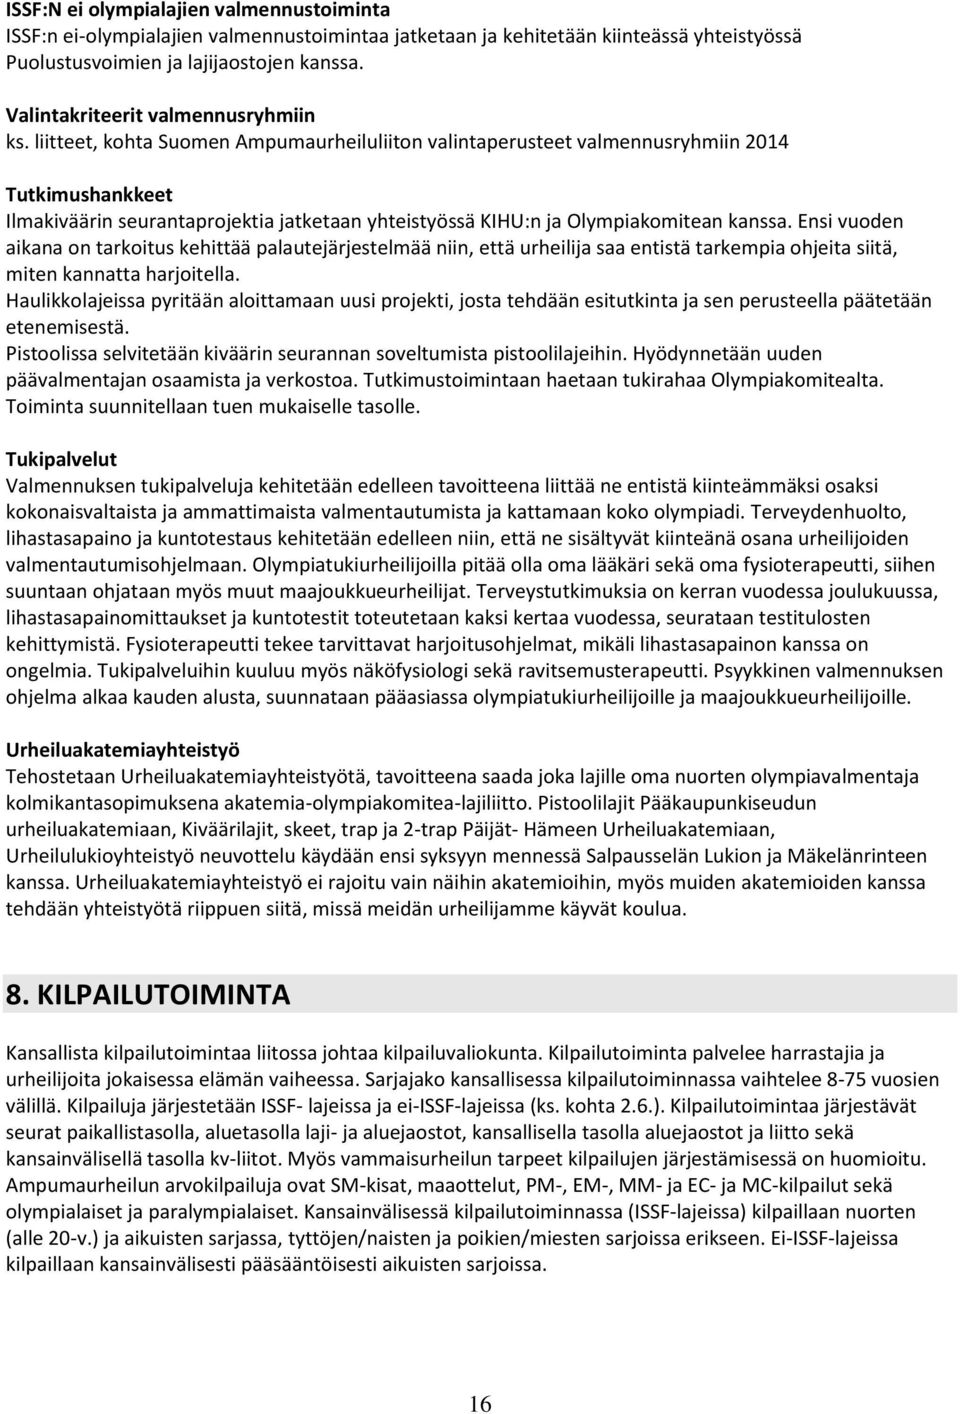 liitteet, kohta Suomen Ampumaurheiluliiton valintaperusteet valmennusryhmiin 2014 Tutkimushankkeet Ilmakiväärin seurantaprojektia jatketaan yhteistyössä KIHU:n ja Olympiakomitean kanssa.